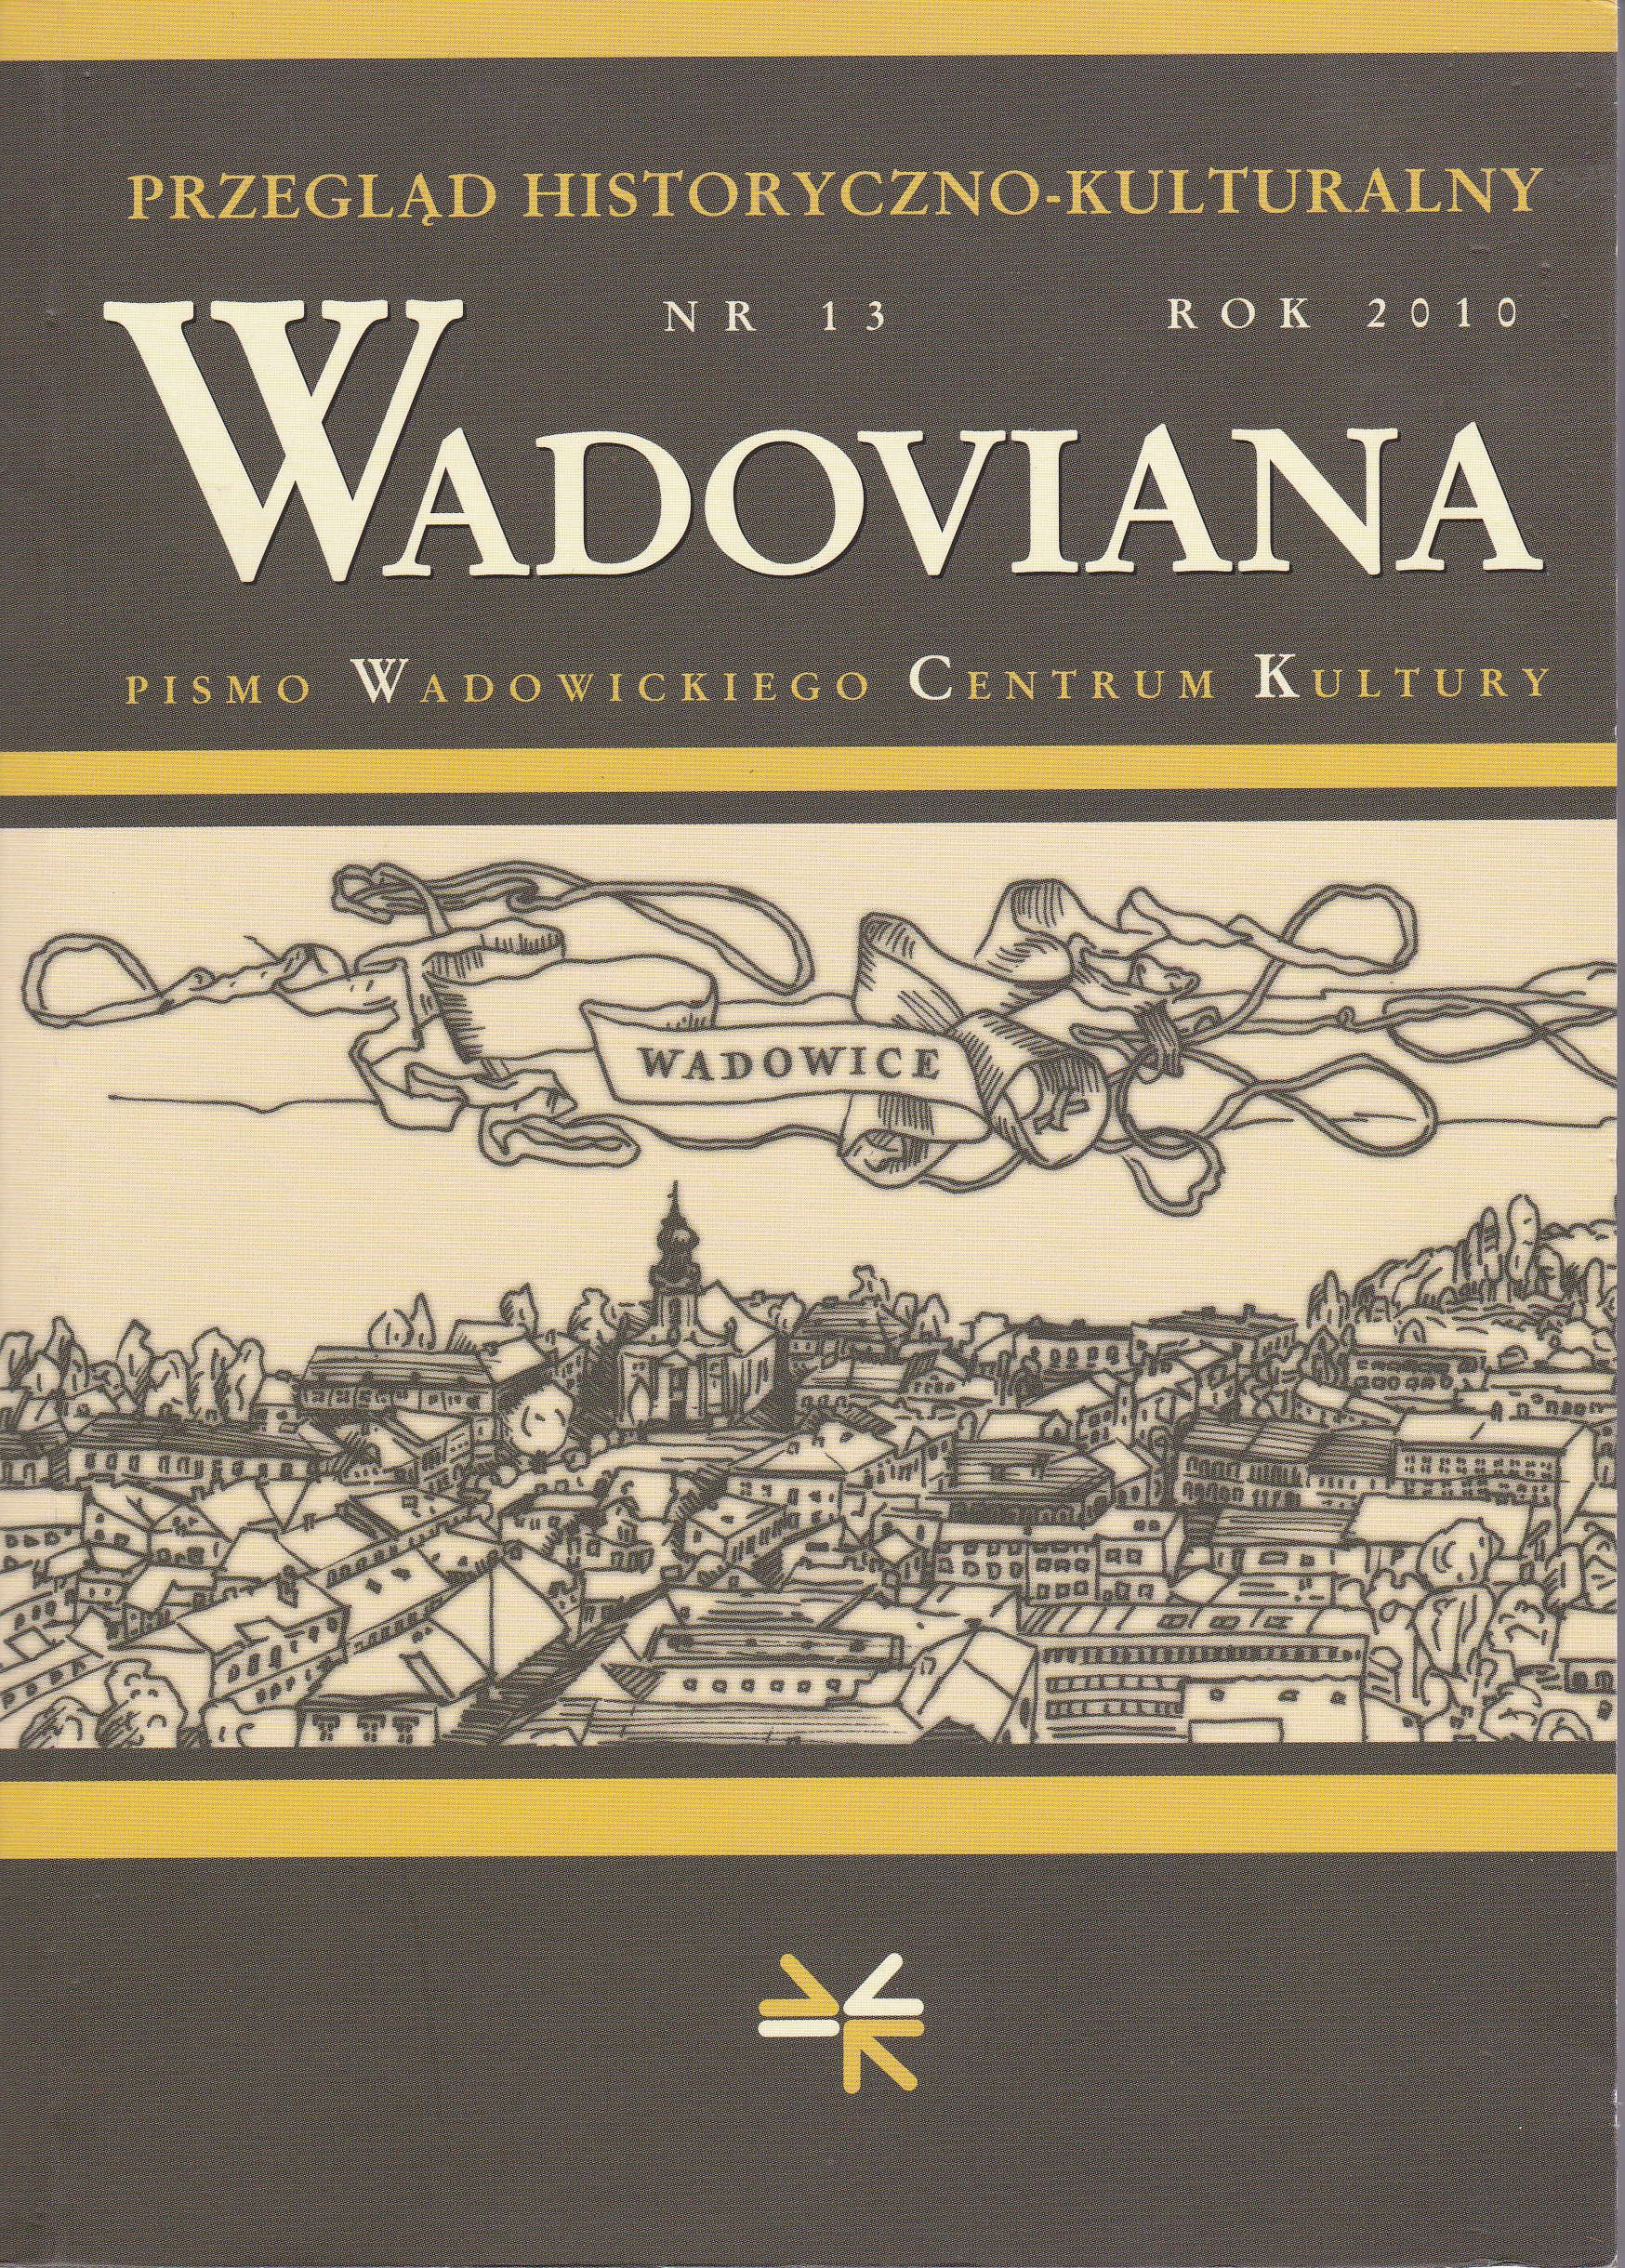 Wadowicka Drużyna Skautowa imienia Stanisława Żółkiewskiego w latach 1911-1918. W stulecie skautingu i harcerstwa w Wadowicach